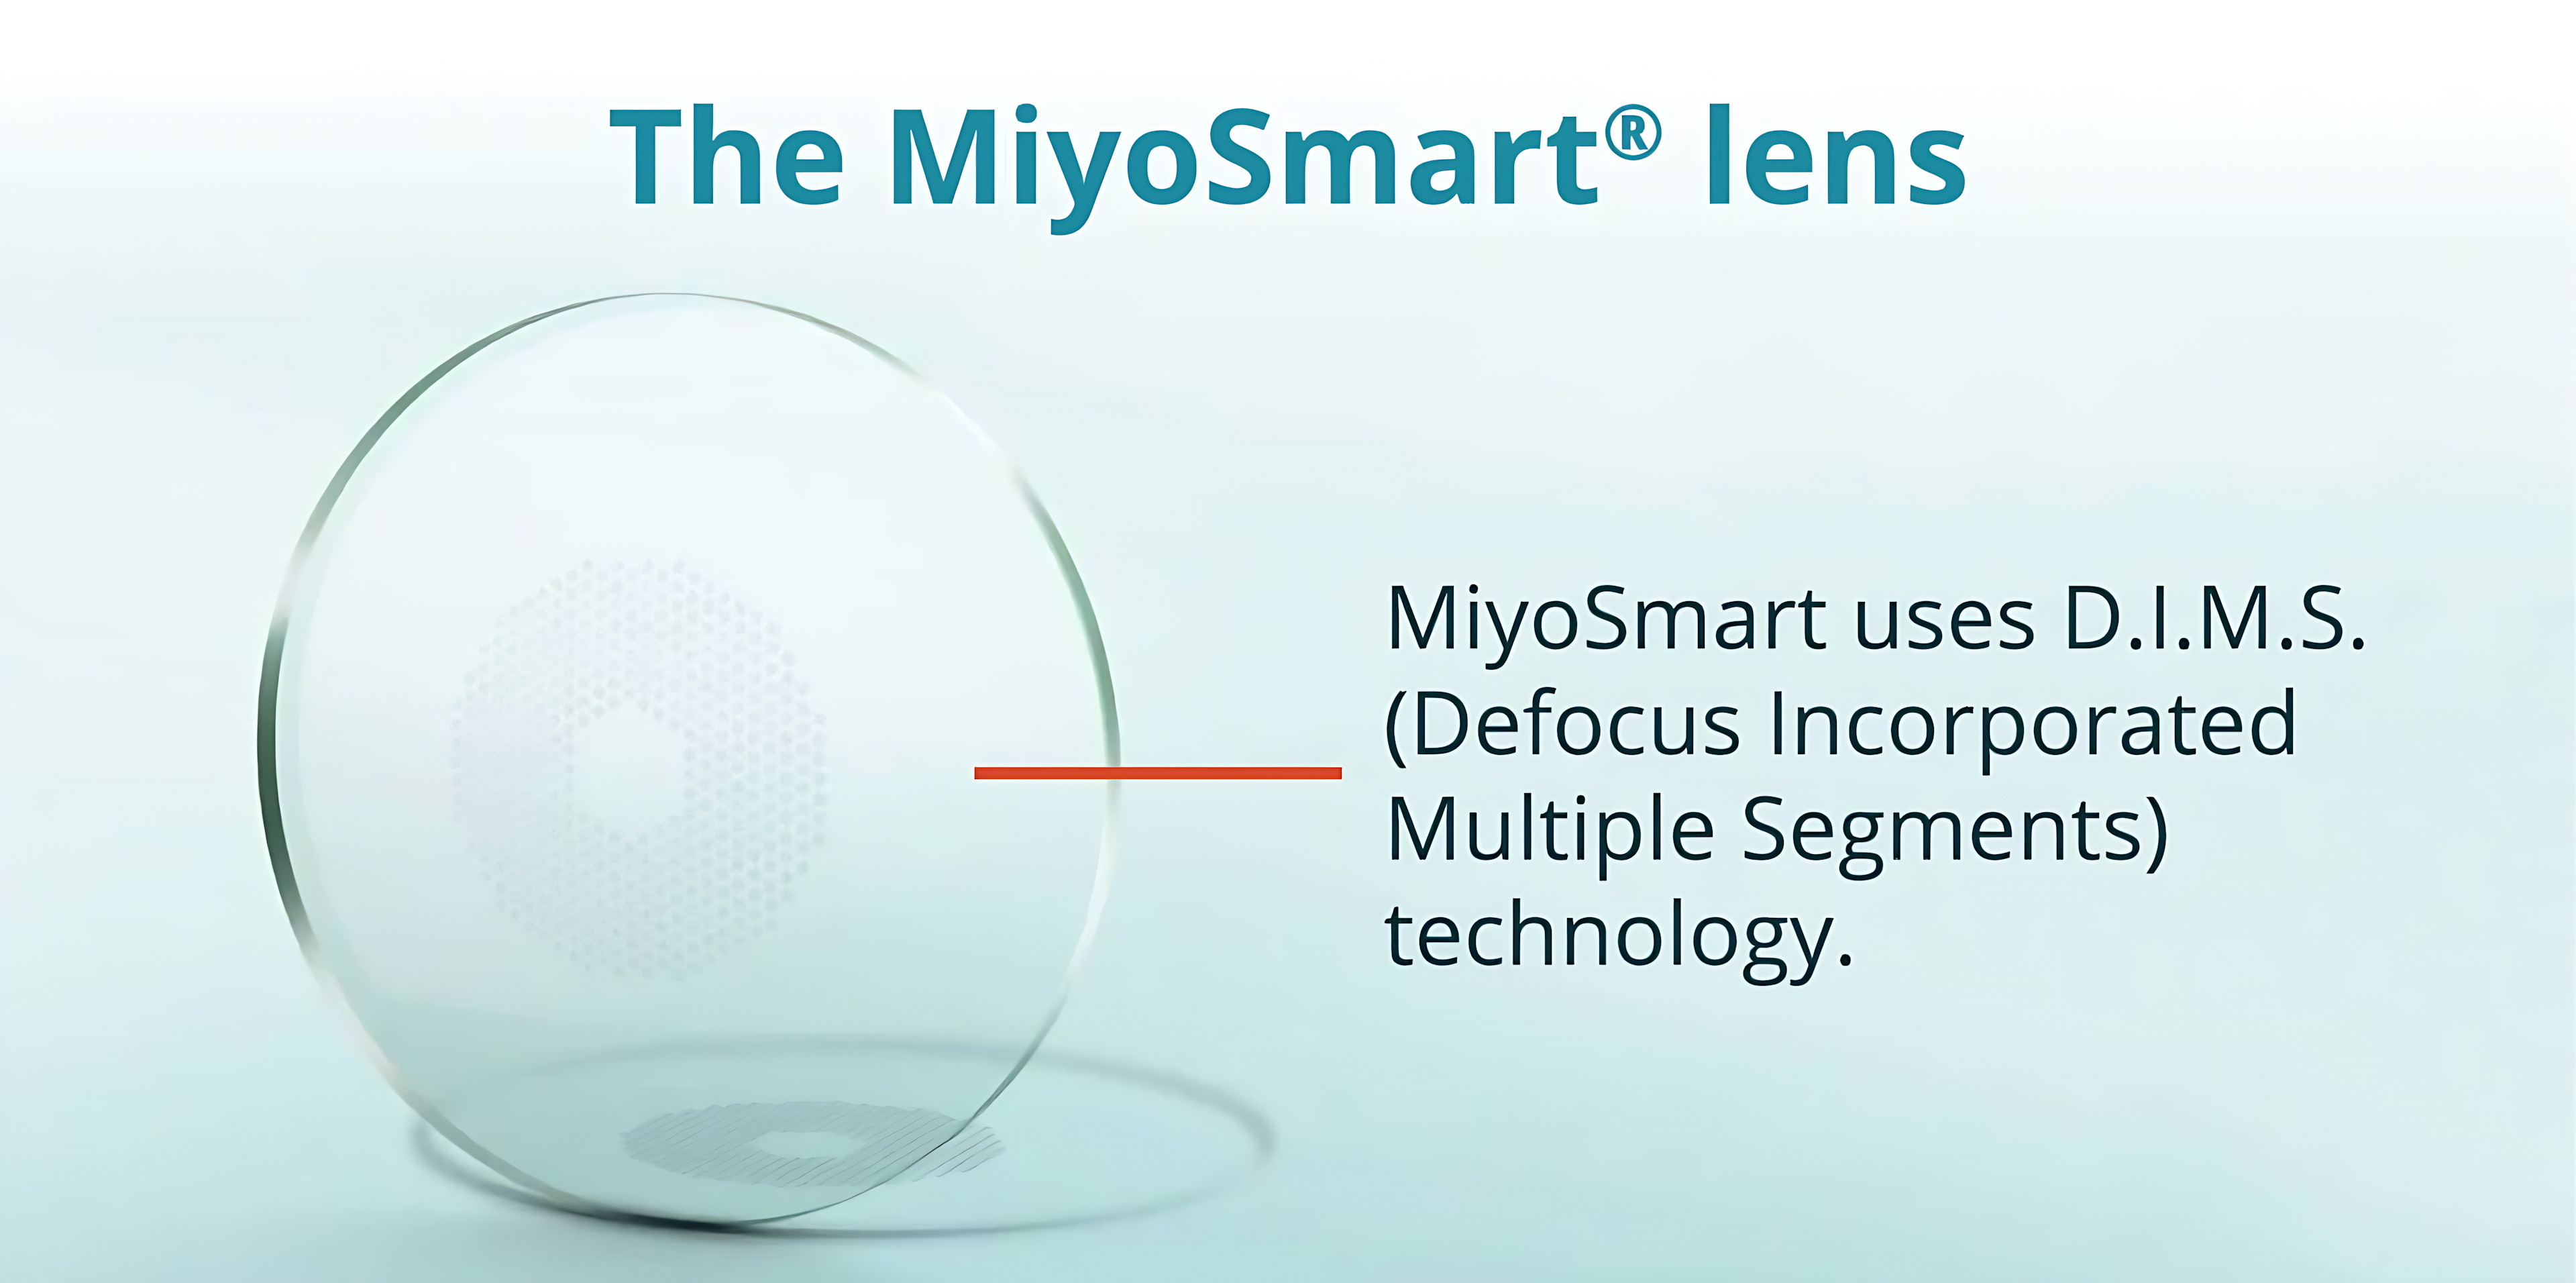 MiyoSmart Lens Image